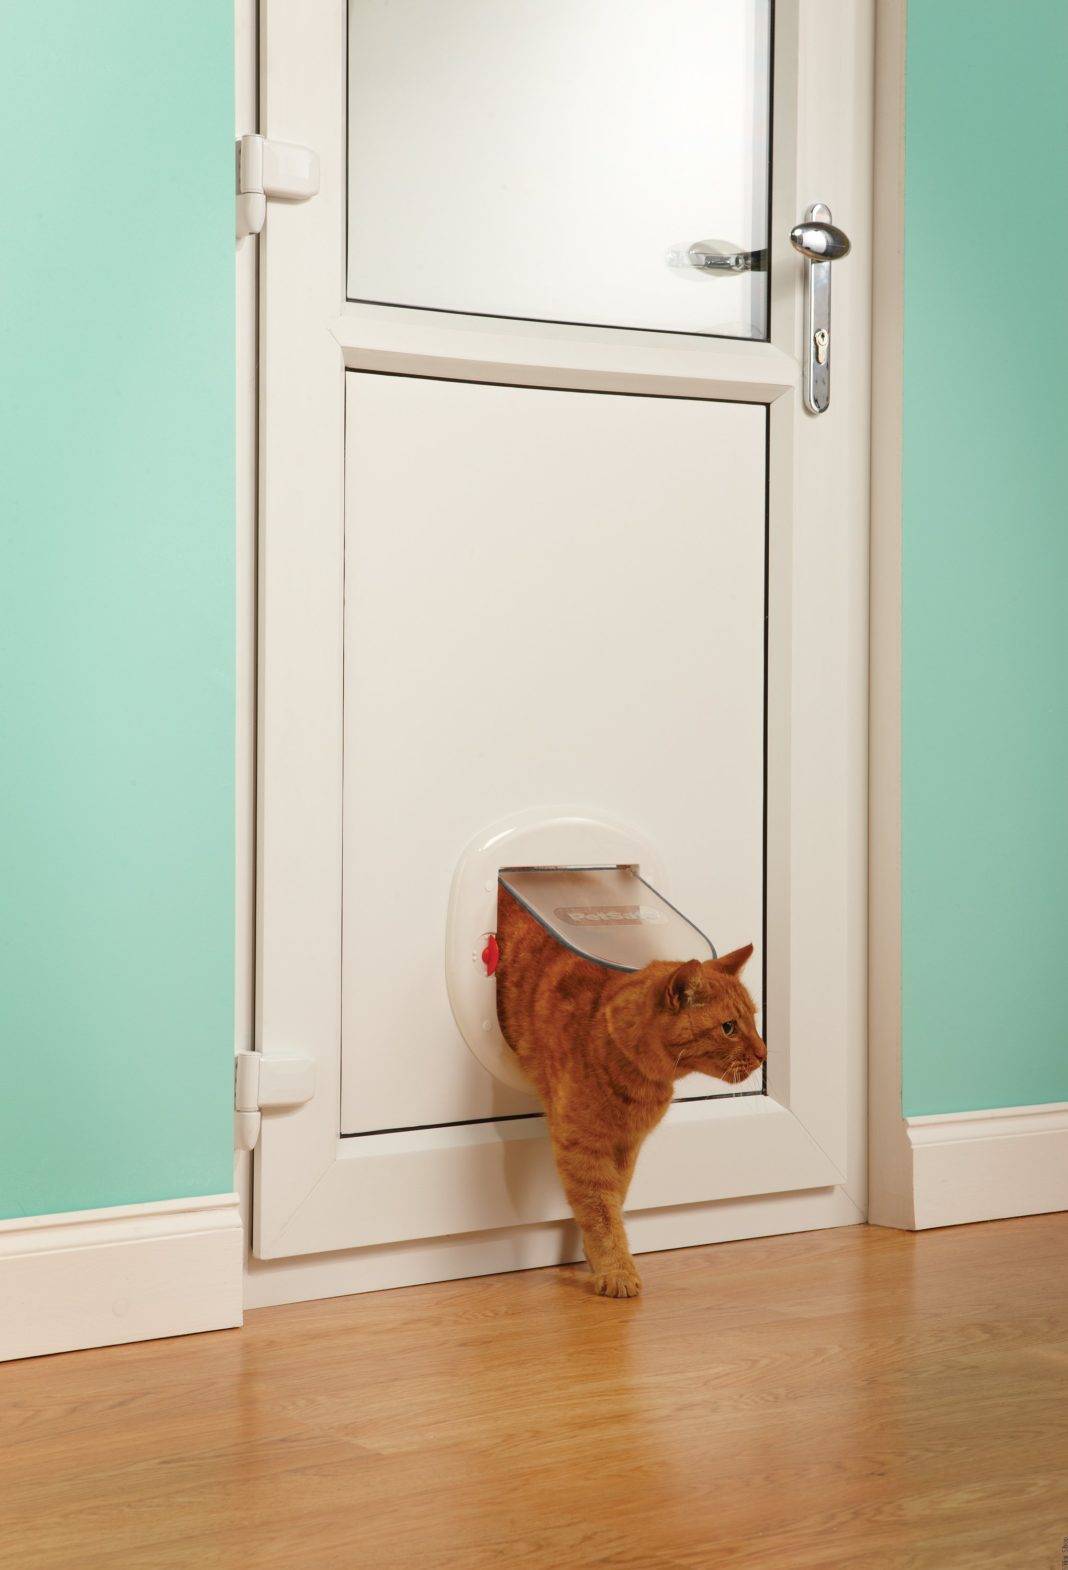 Как выбрать дверку для кошки для входных дверей или сделать своими руками?